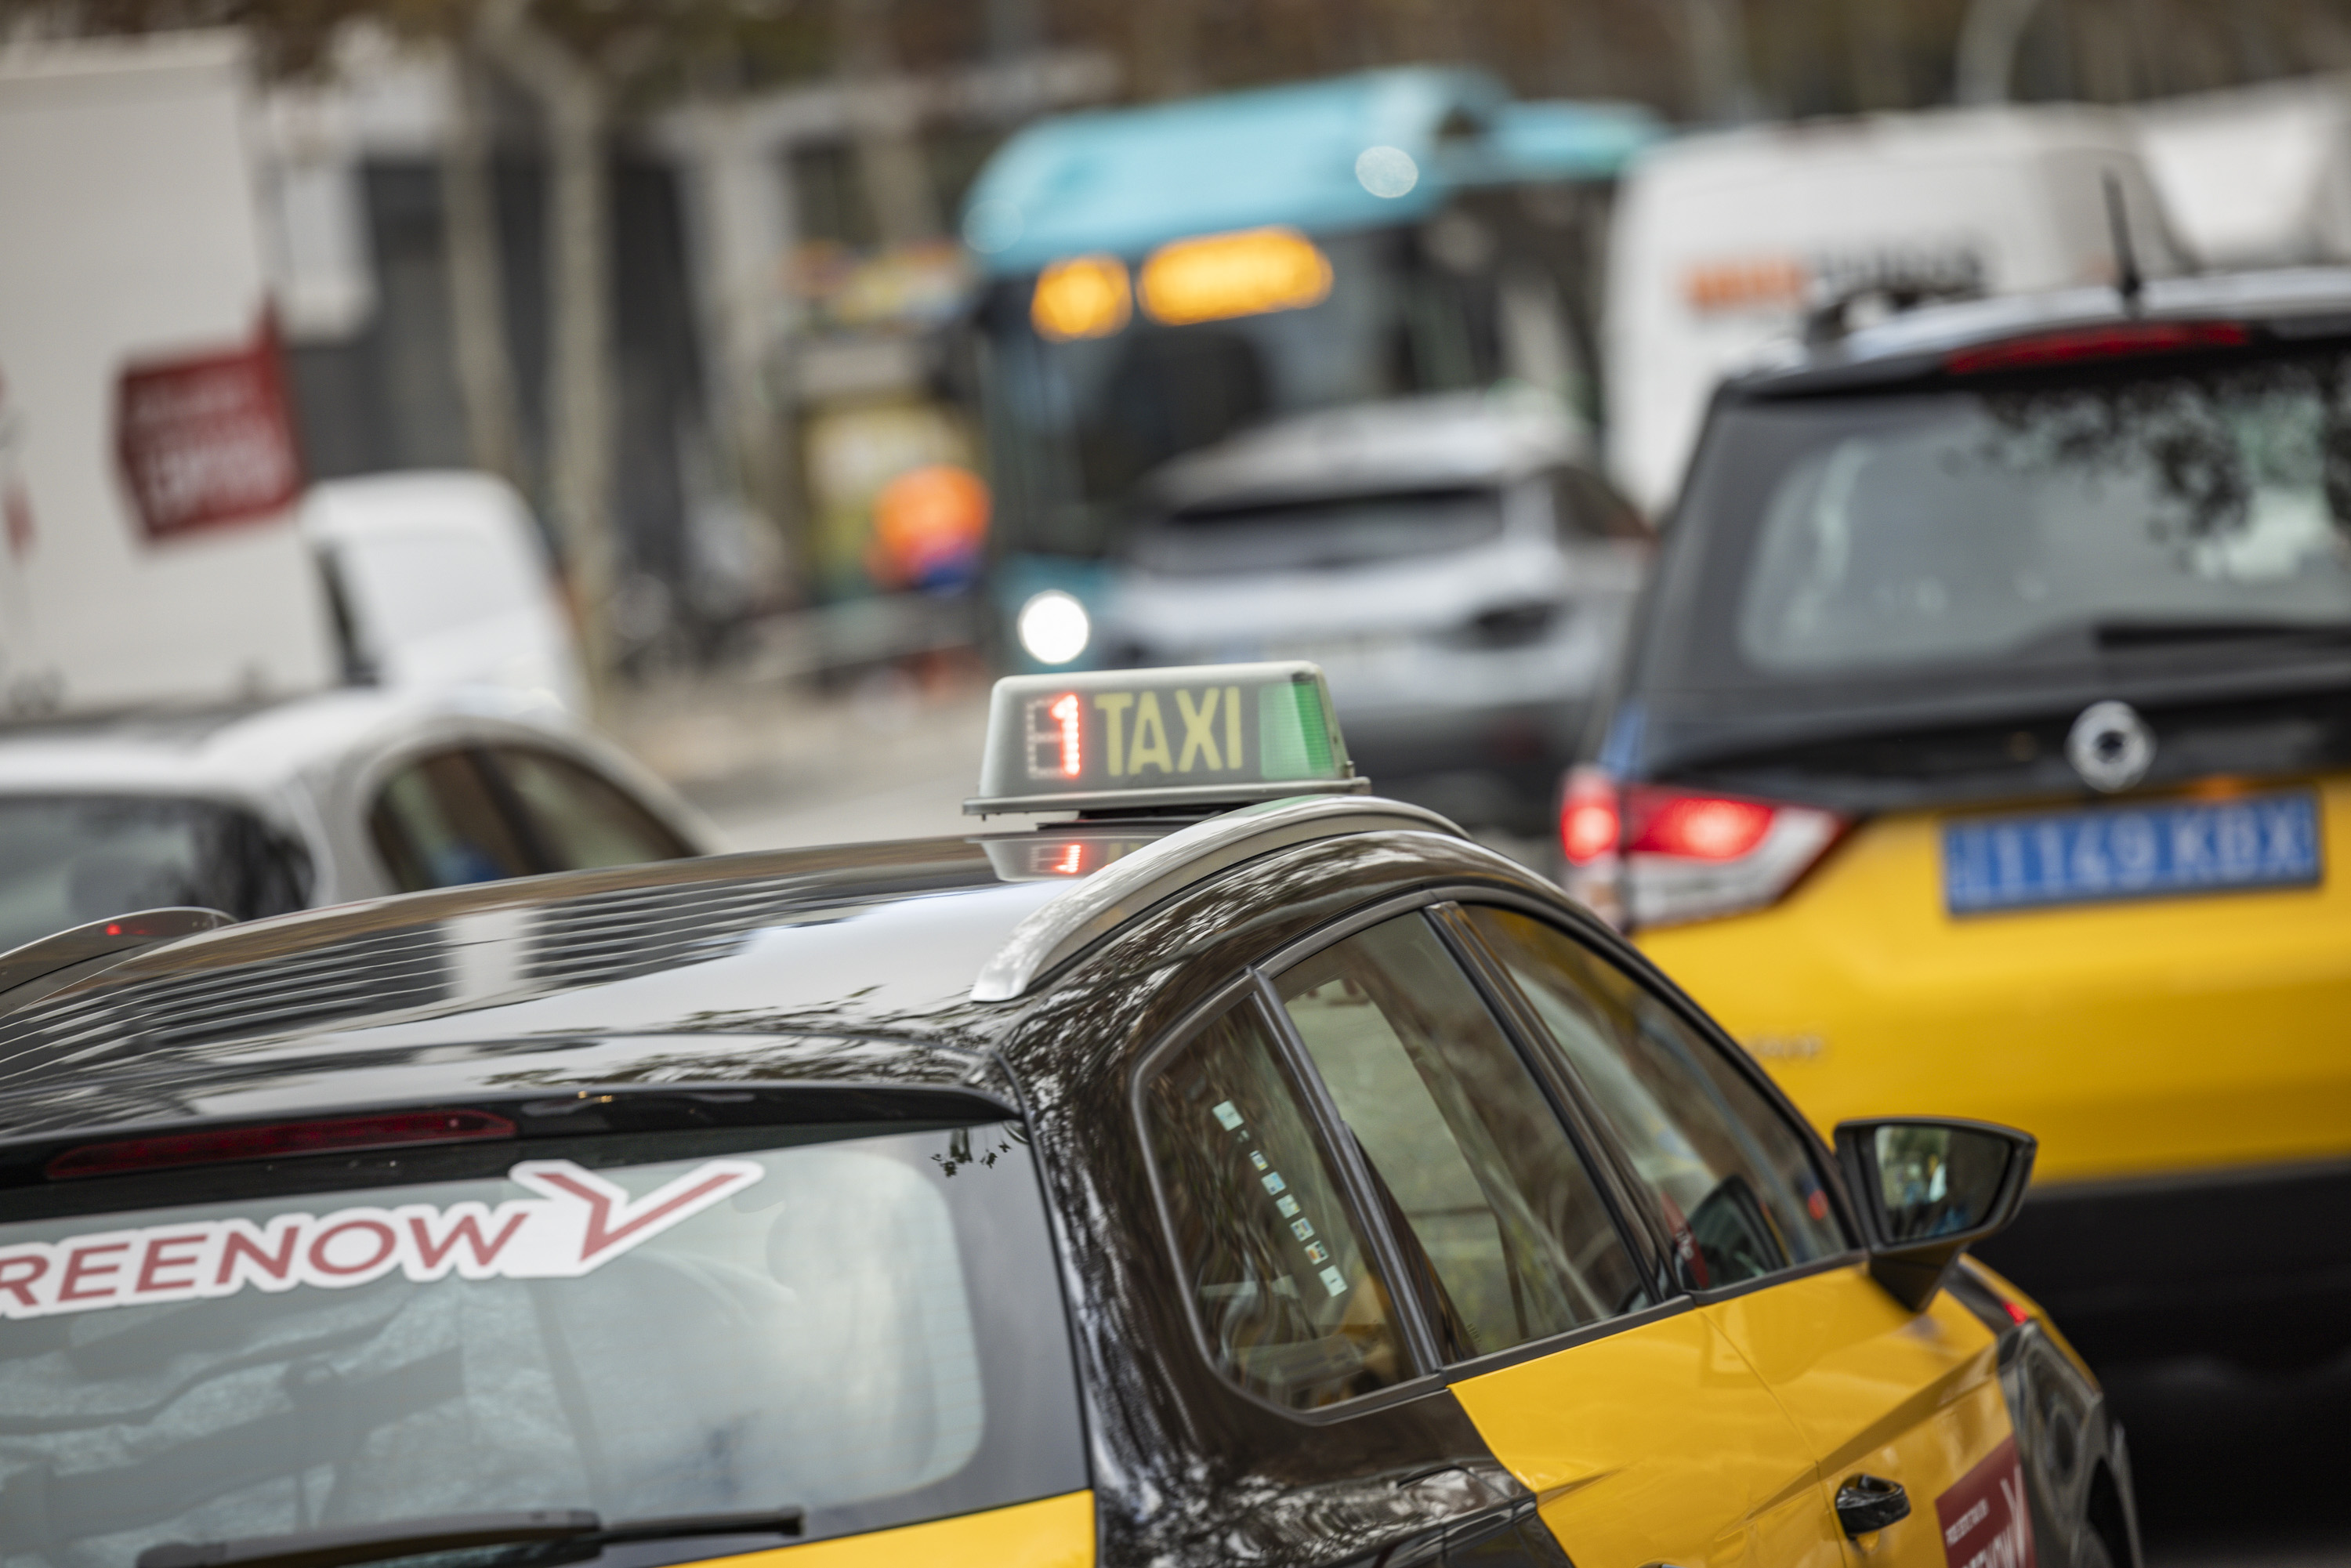 Élite Taxi levanta la amenaza de boicotear el MWC después de llegar a un acuerdo